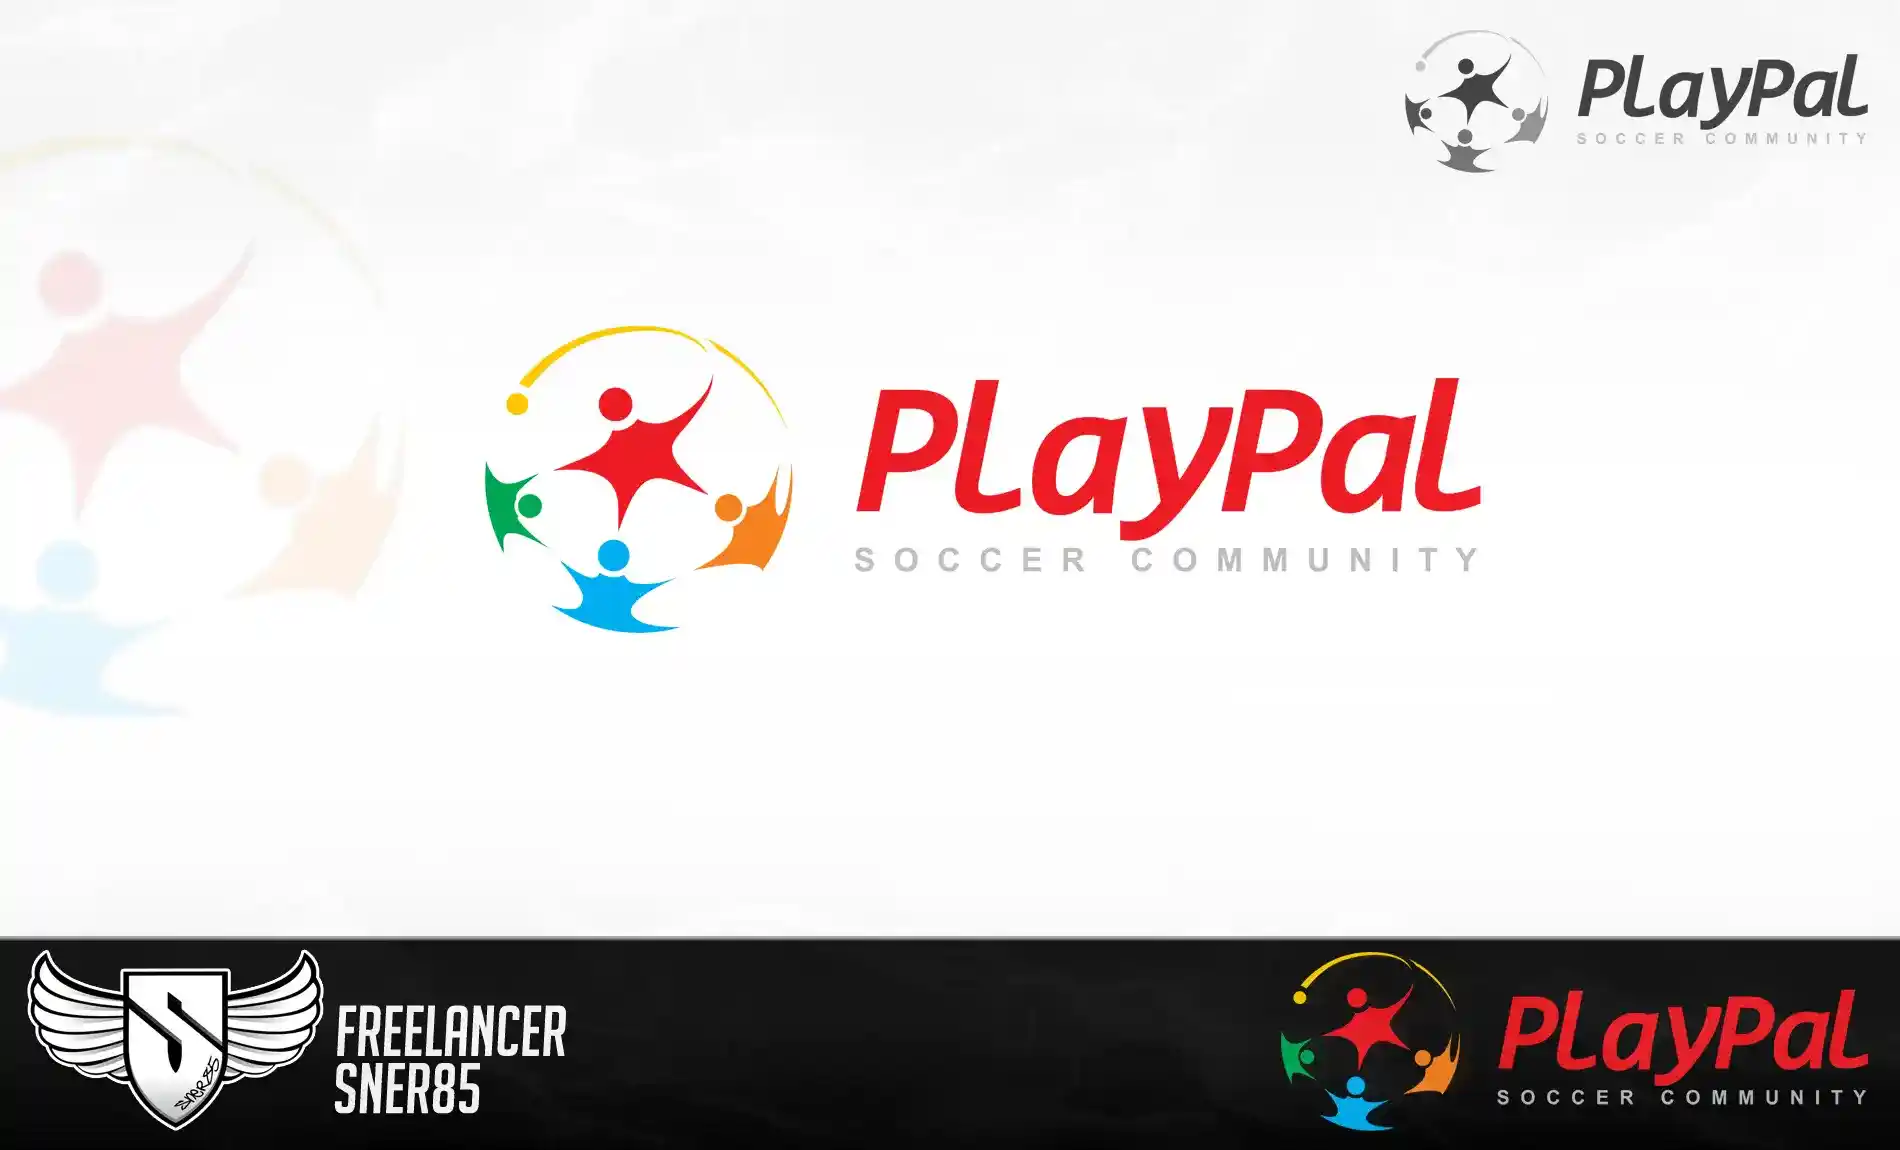 Logo design for PlayPal soccer community